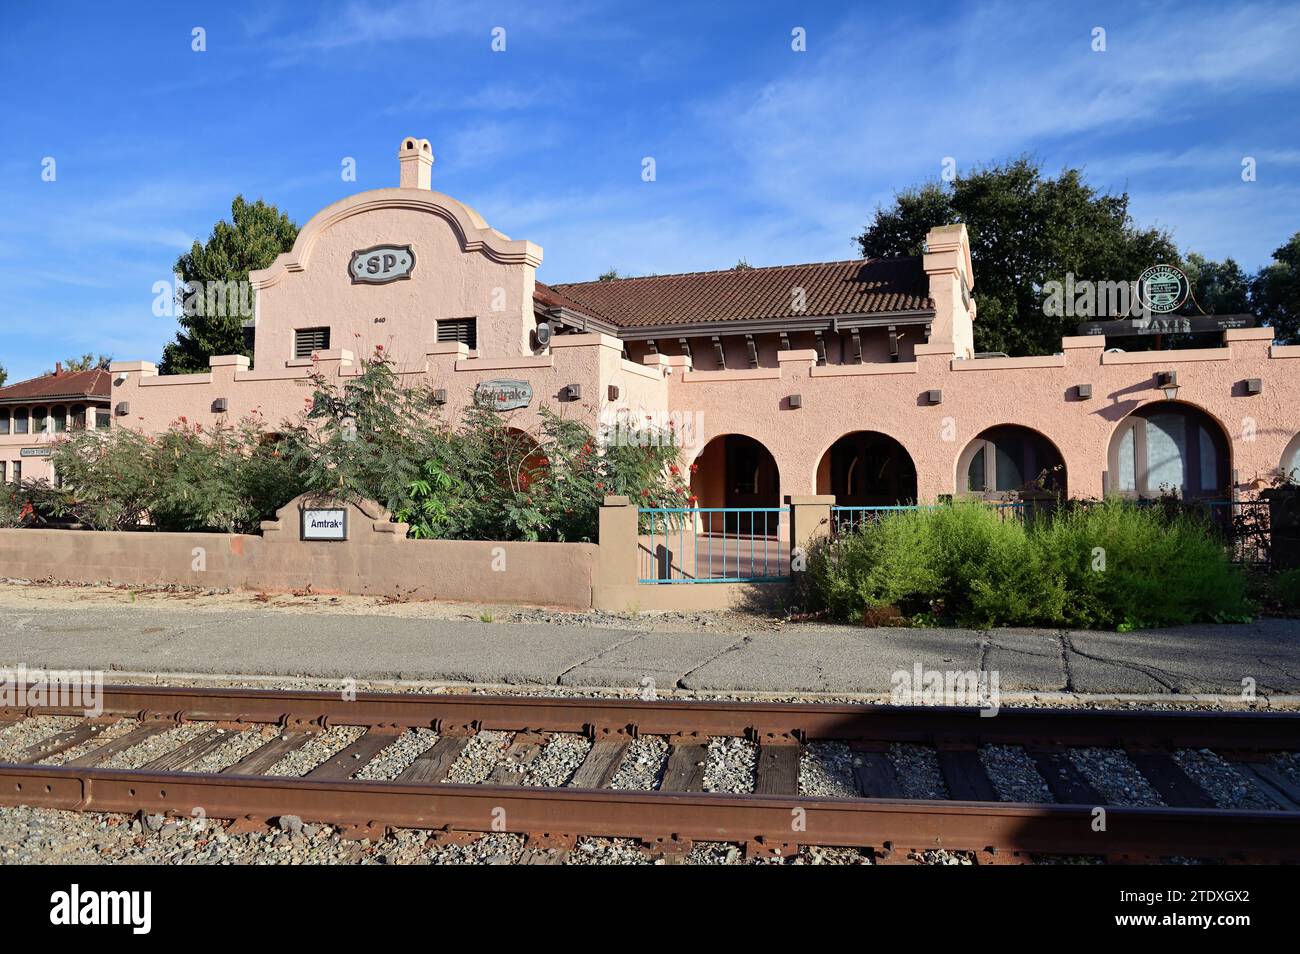 Davis, Kalifornien, USA. Der historische Bahnhof in der Universitätsstadt Davis, Kalifornien, wo sich die University of California, Davis, befindet. Stockfoto